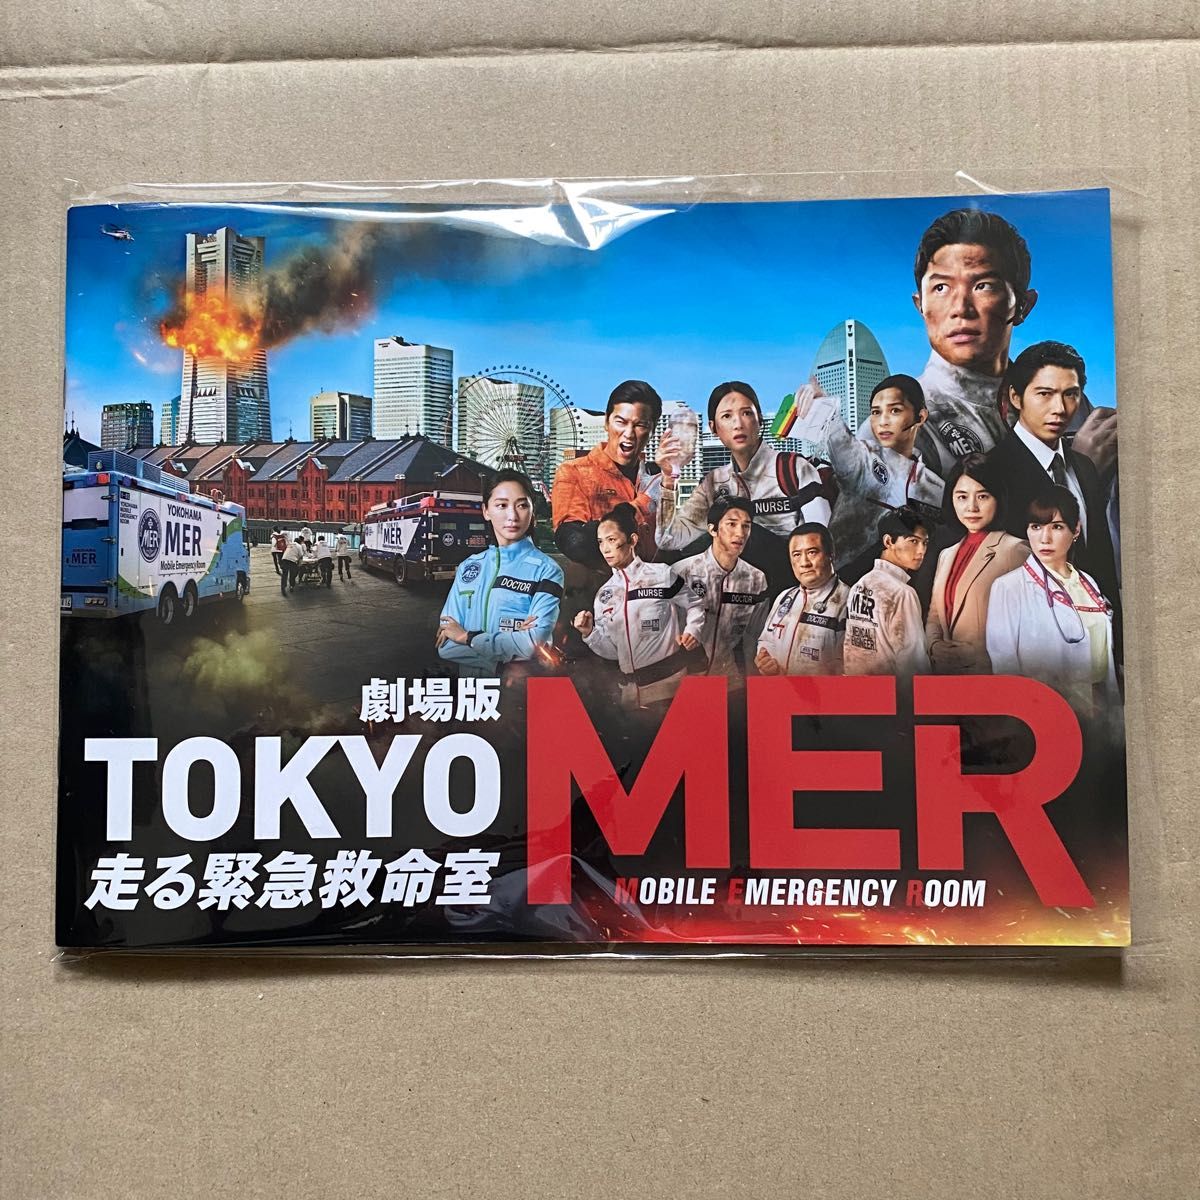 劇場版 TOKYO MER 走る緊急救命室 パンフレット